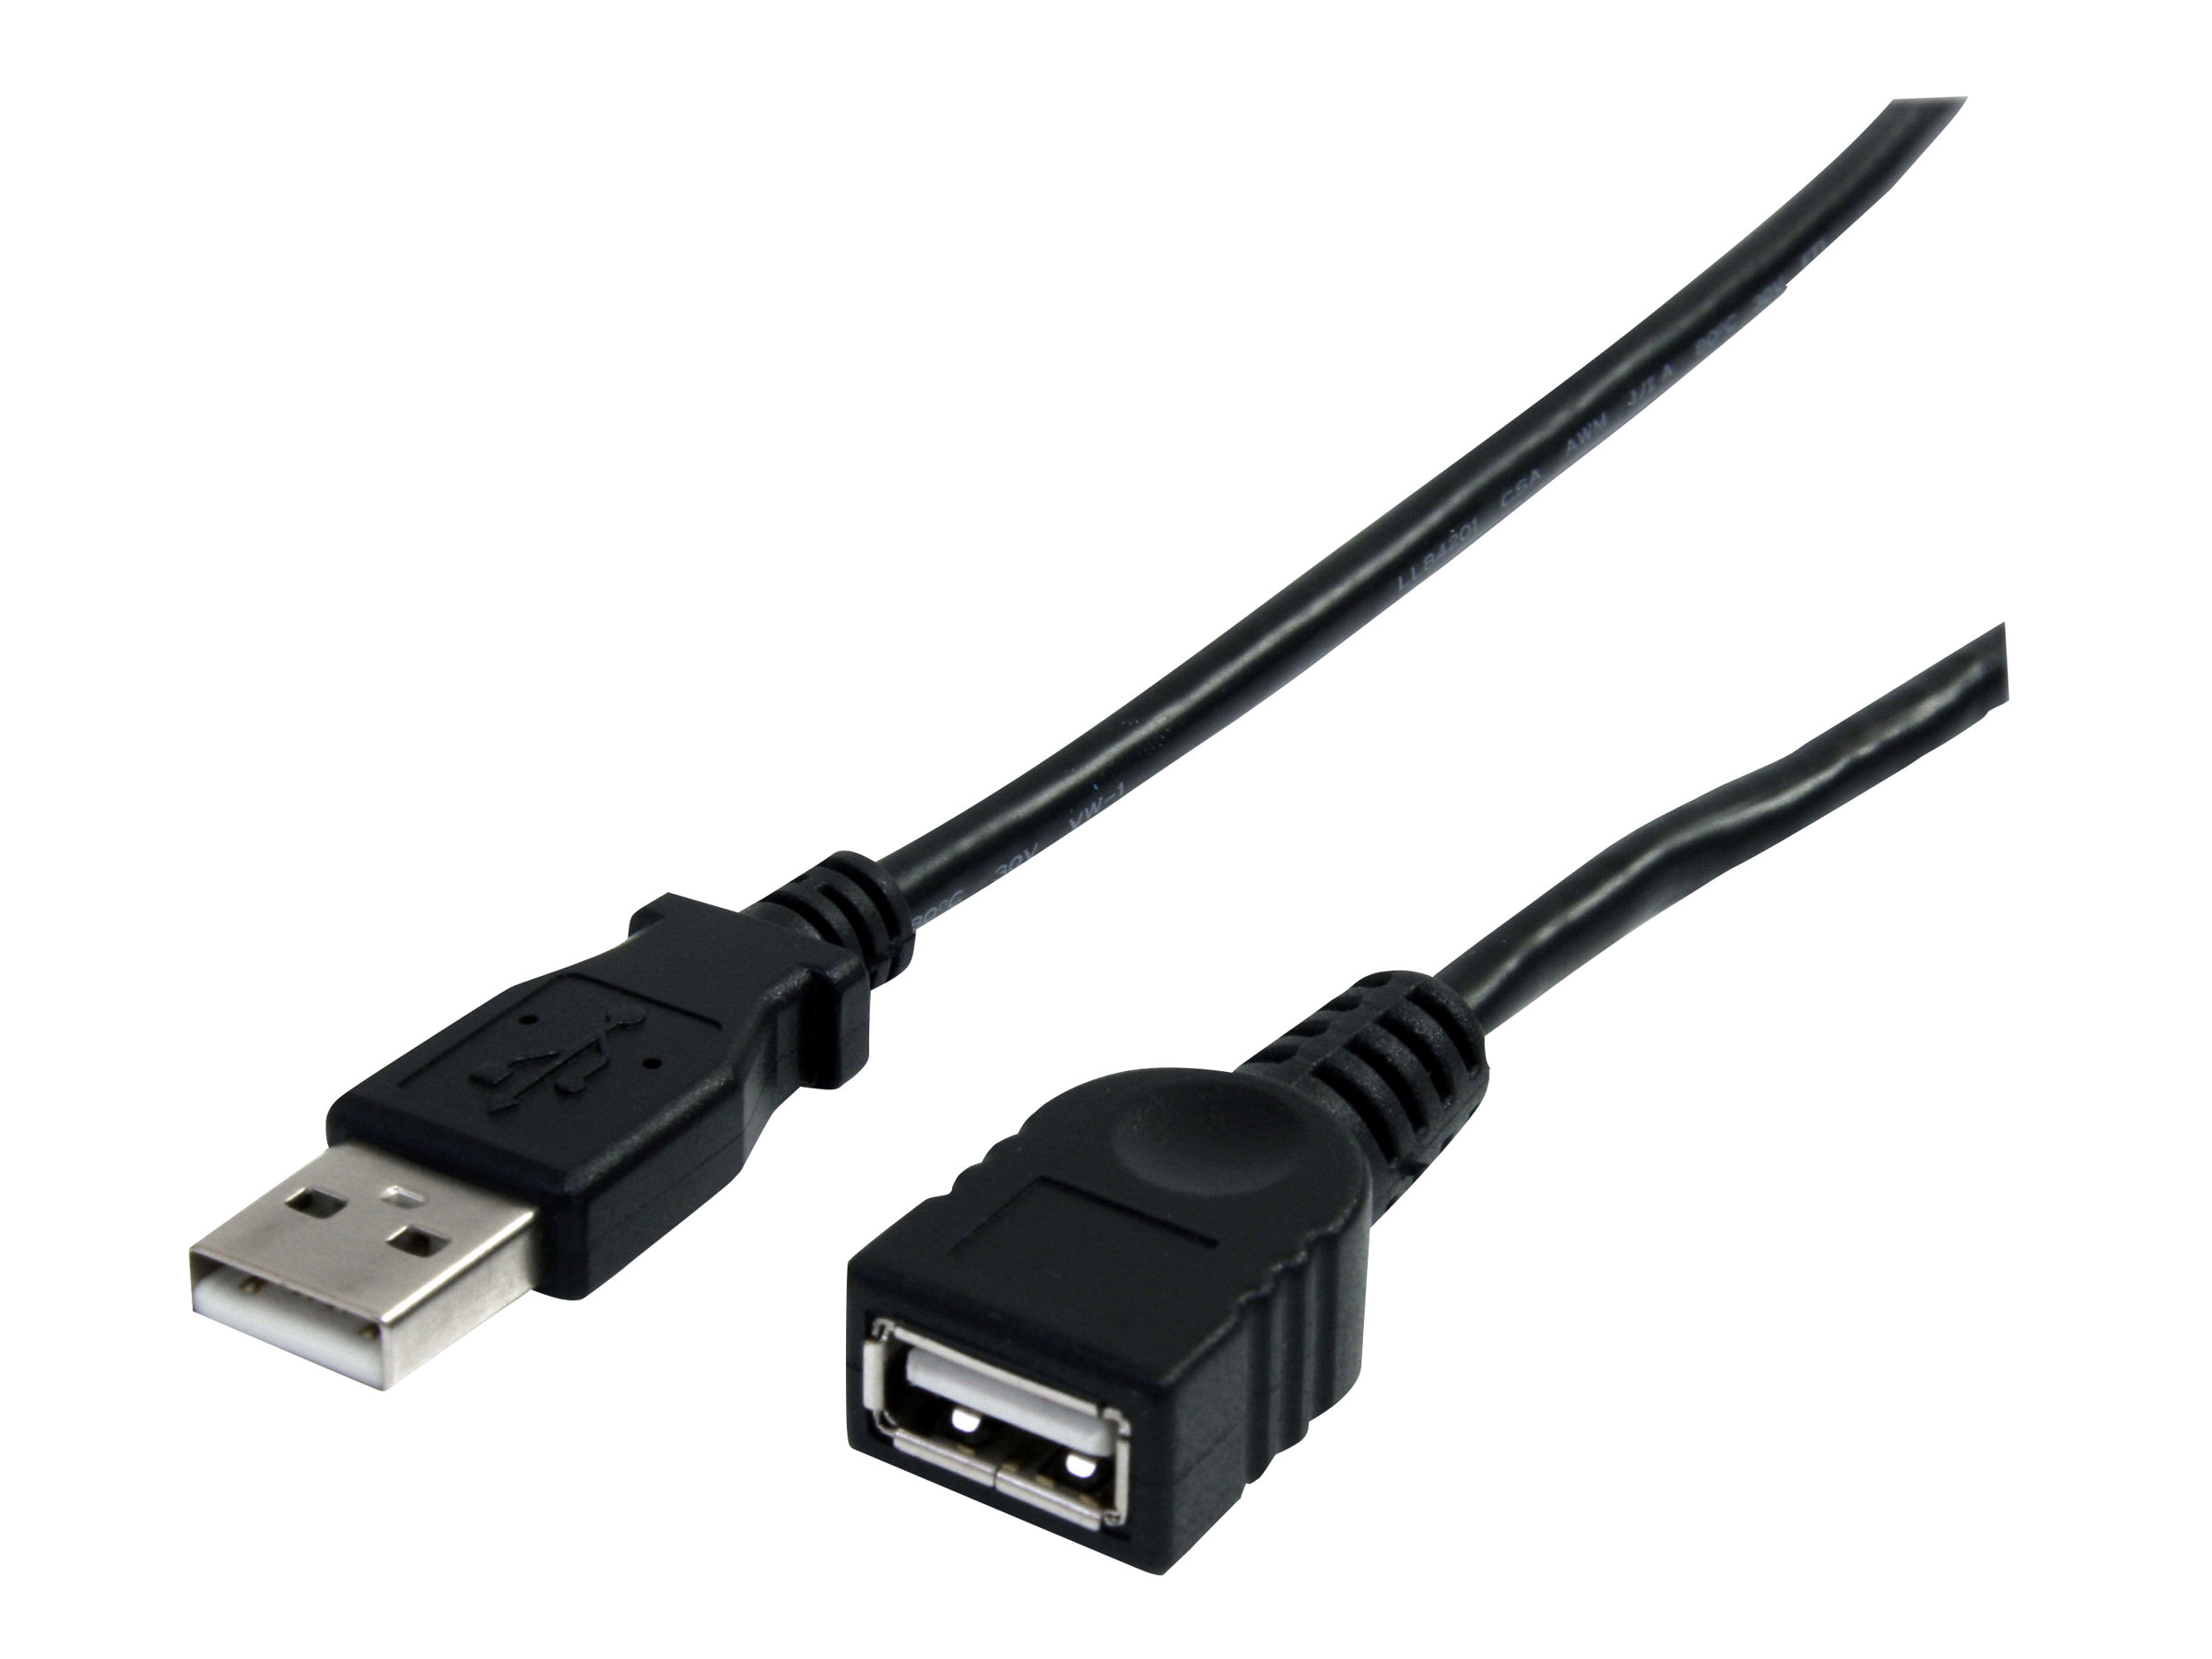 StarTech.com Câble d'extension USB Type-A de 3 m - M/F - Rallonge USB-A - Noir (USBEXTAA10BK) - Rallonge de câble USB - USB (M) pour USB (F) - USB 2.0 - 3 m - noir - pour P/N: 35FCREADBK3, ICUSB2321F, ICUSB232PRO, ICUSB232V2, LTUB1MBK, MSDREADU2OTG, UUSBOTG - USBEXTAA10BK - Câbles USB